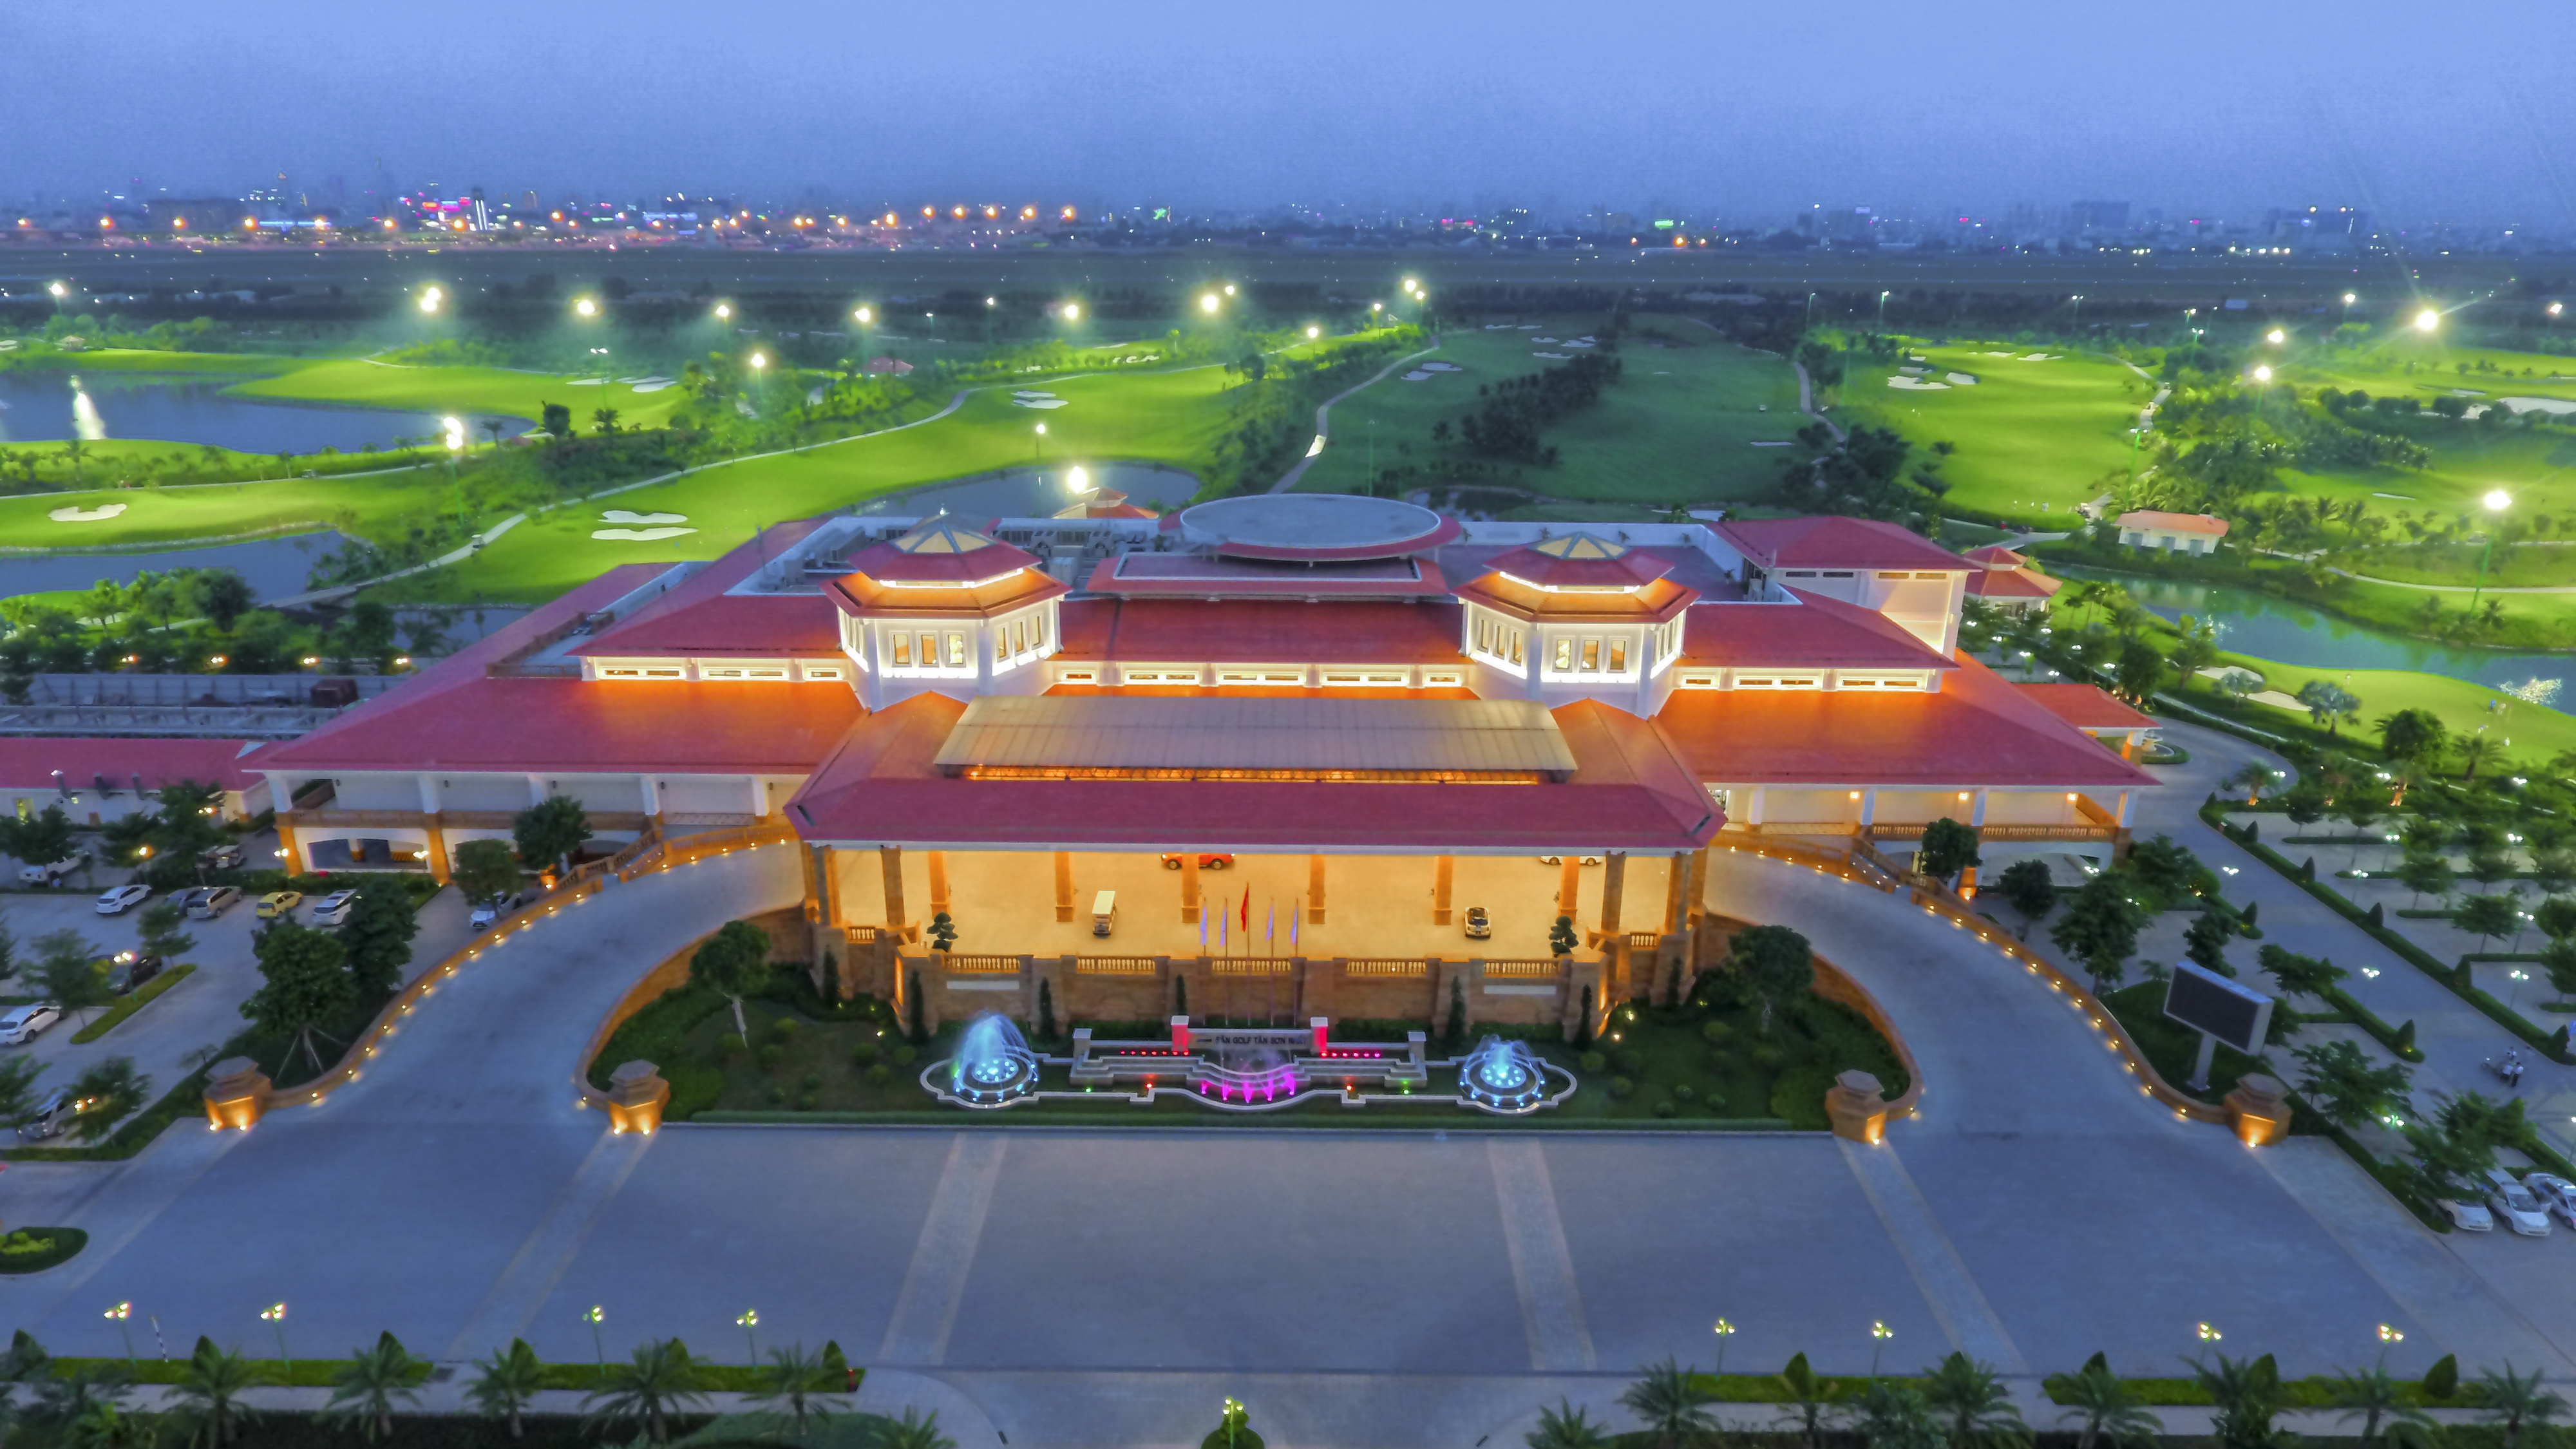 Trung tâm Hội nghị - Tiệc cưới Long Biên Palace: Nhà hàng duy nhất nằm trong sân golf